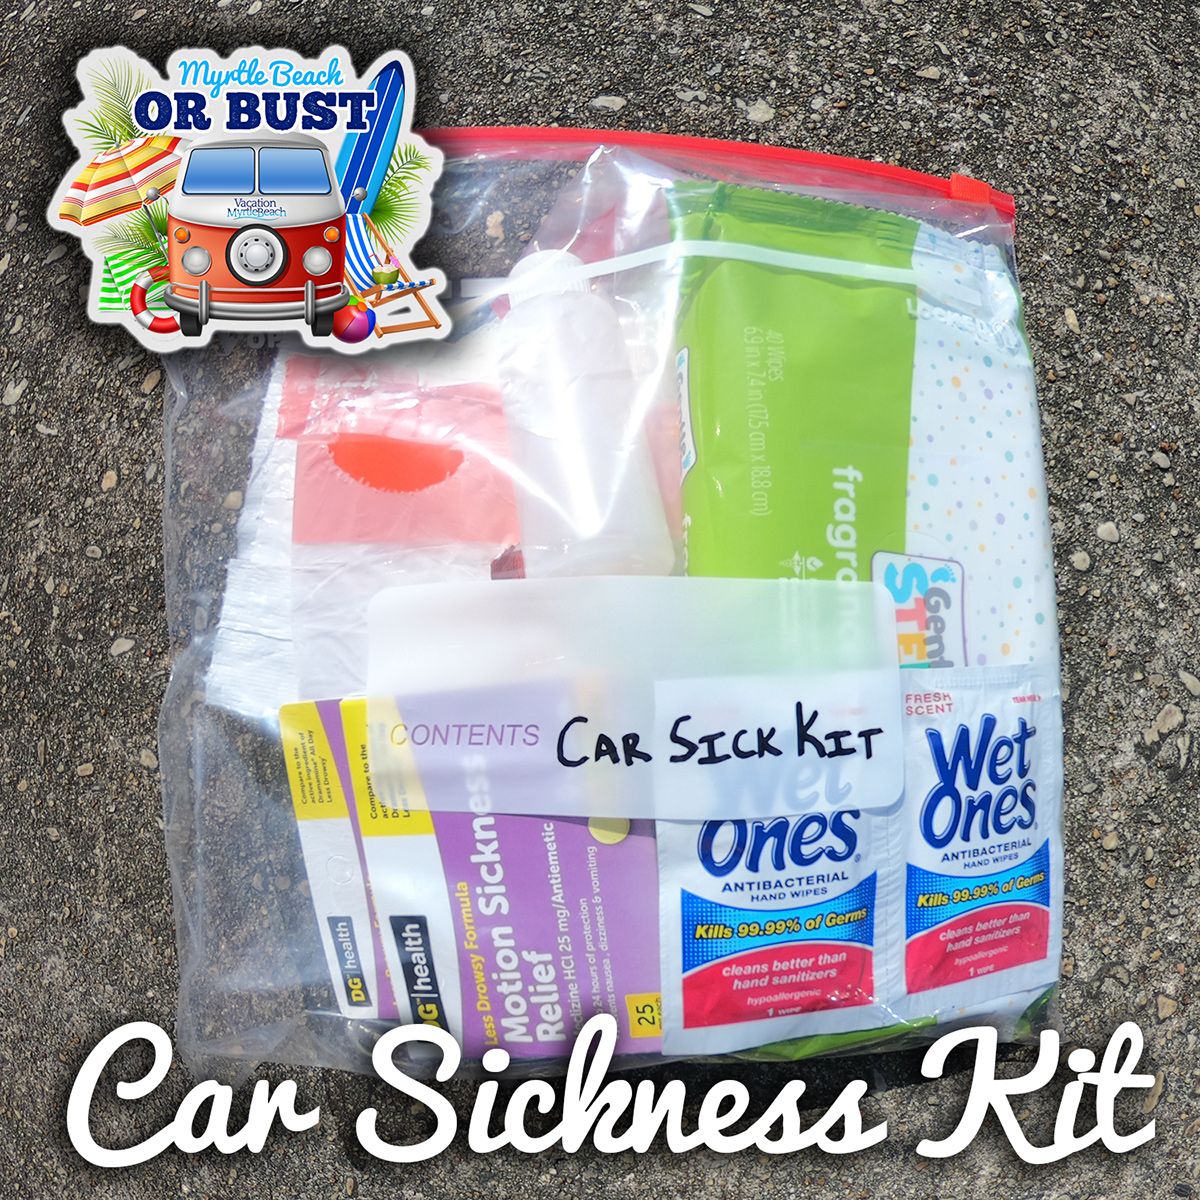 Road Trip Hack: Car Sickness Road Trip Kit How-To